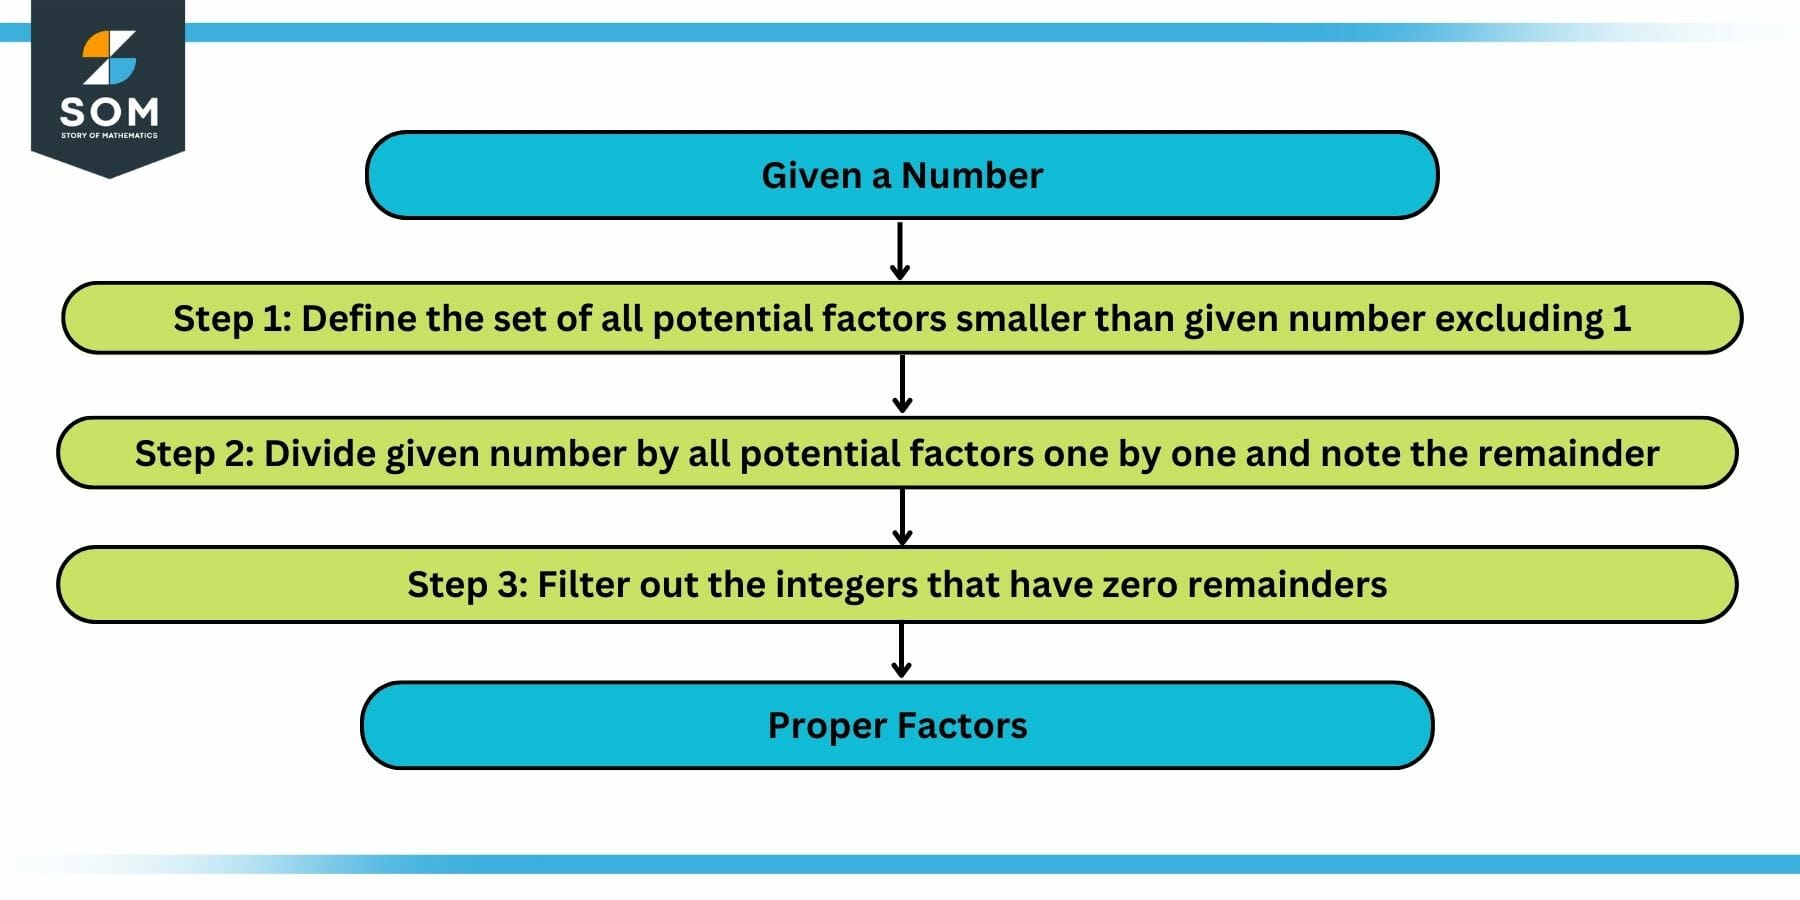 Process of Finding Proper Factors